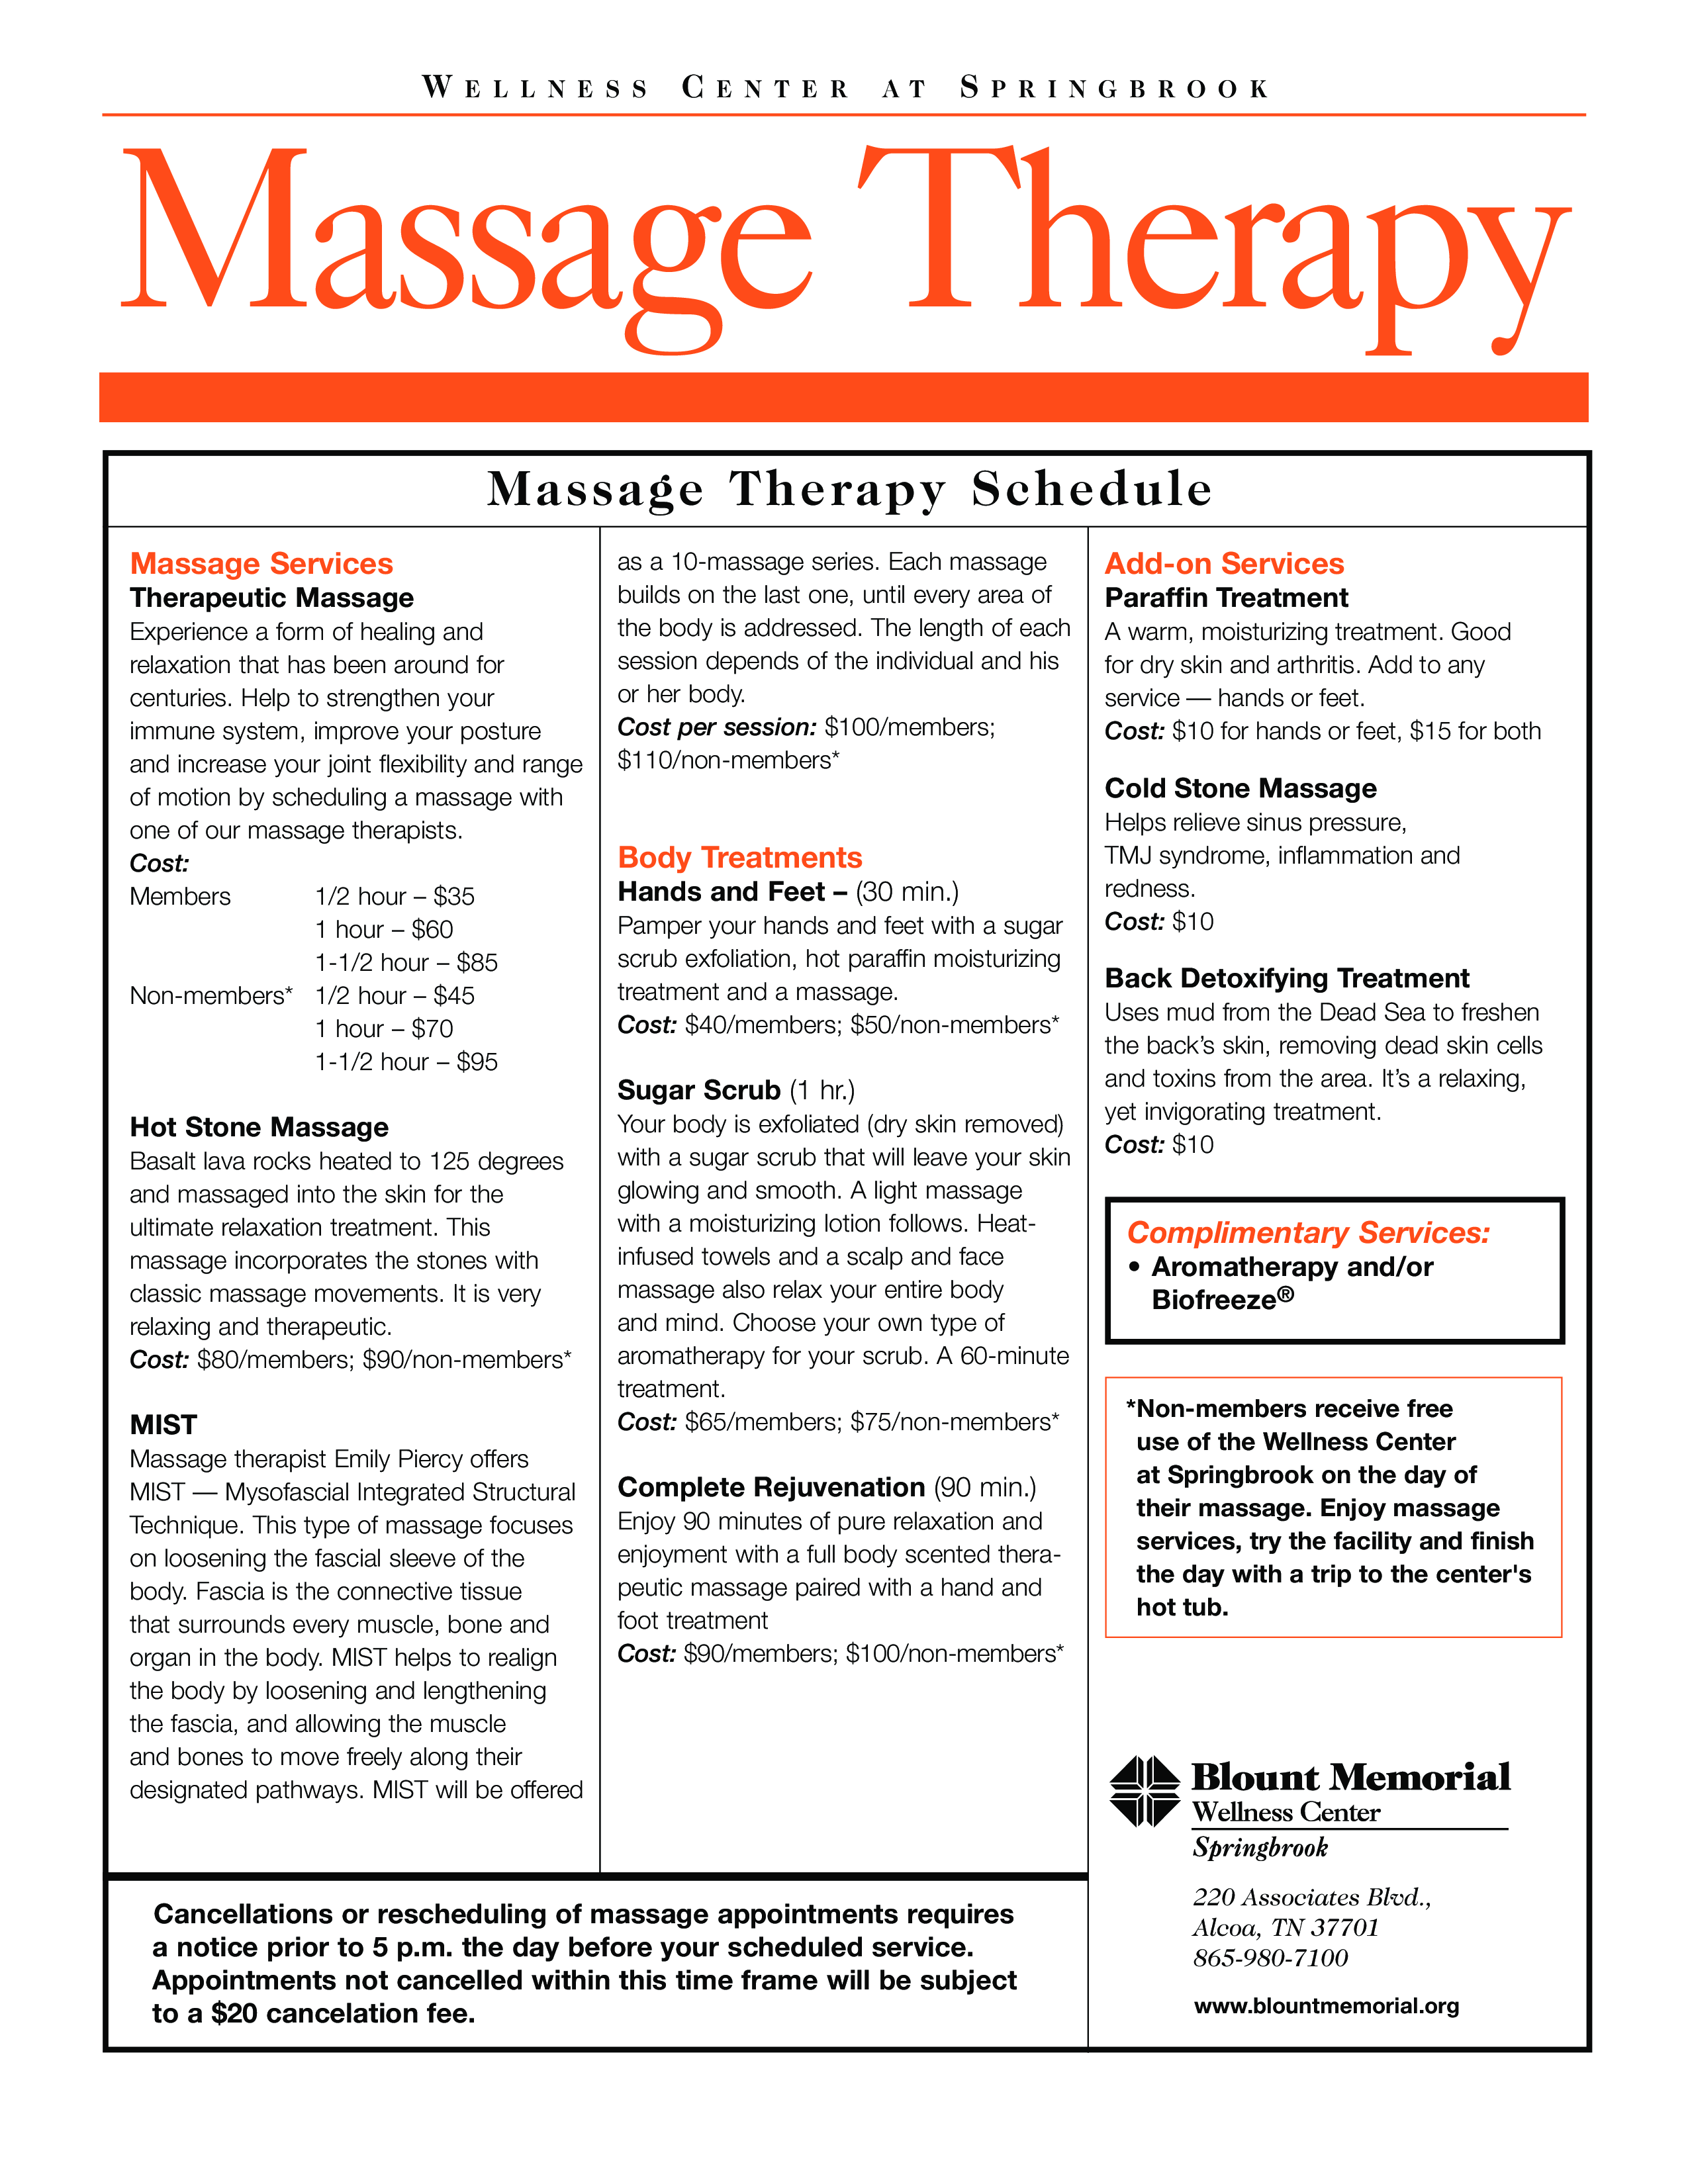 massage therapy schedule Hauptschablonenbild